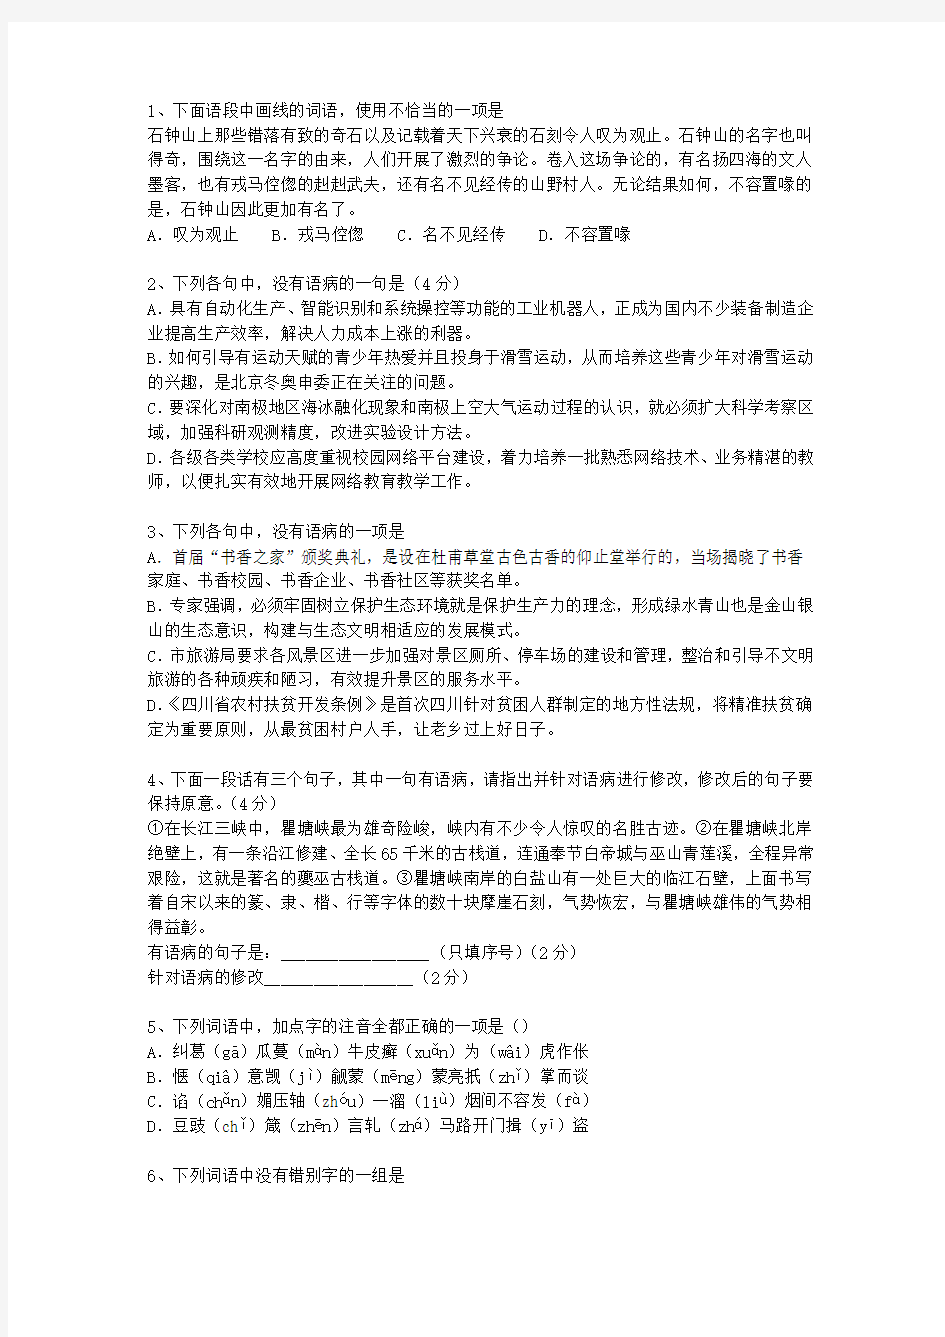 2012香港特别行政区高考语文试卷及答案考试答题技巧